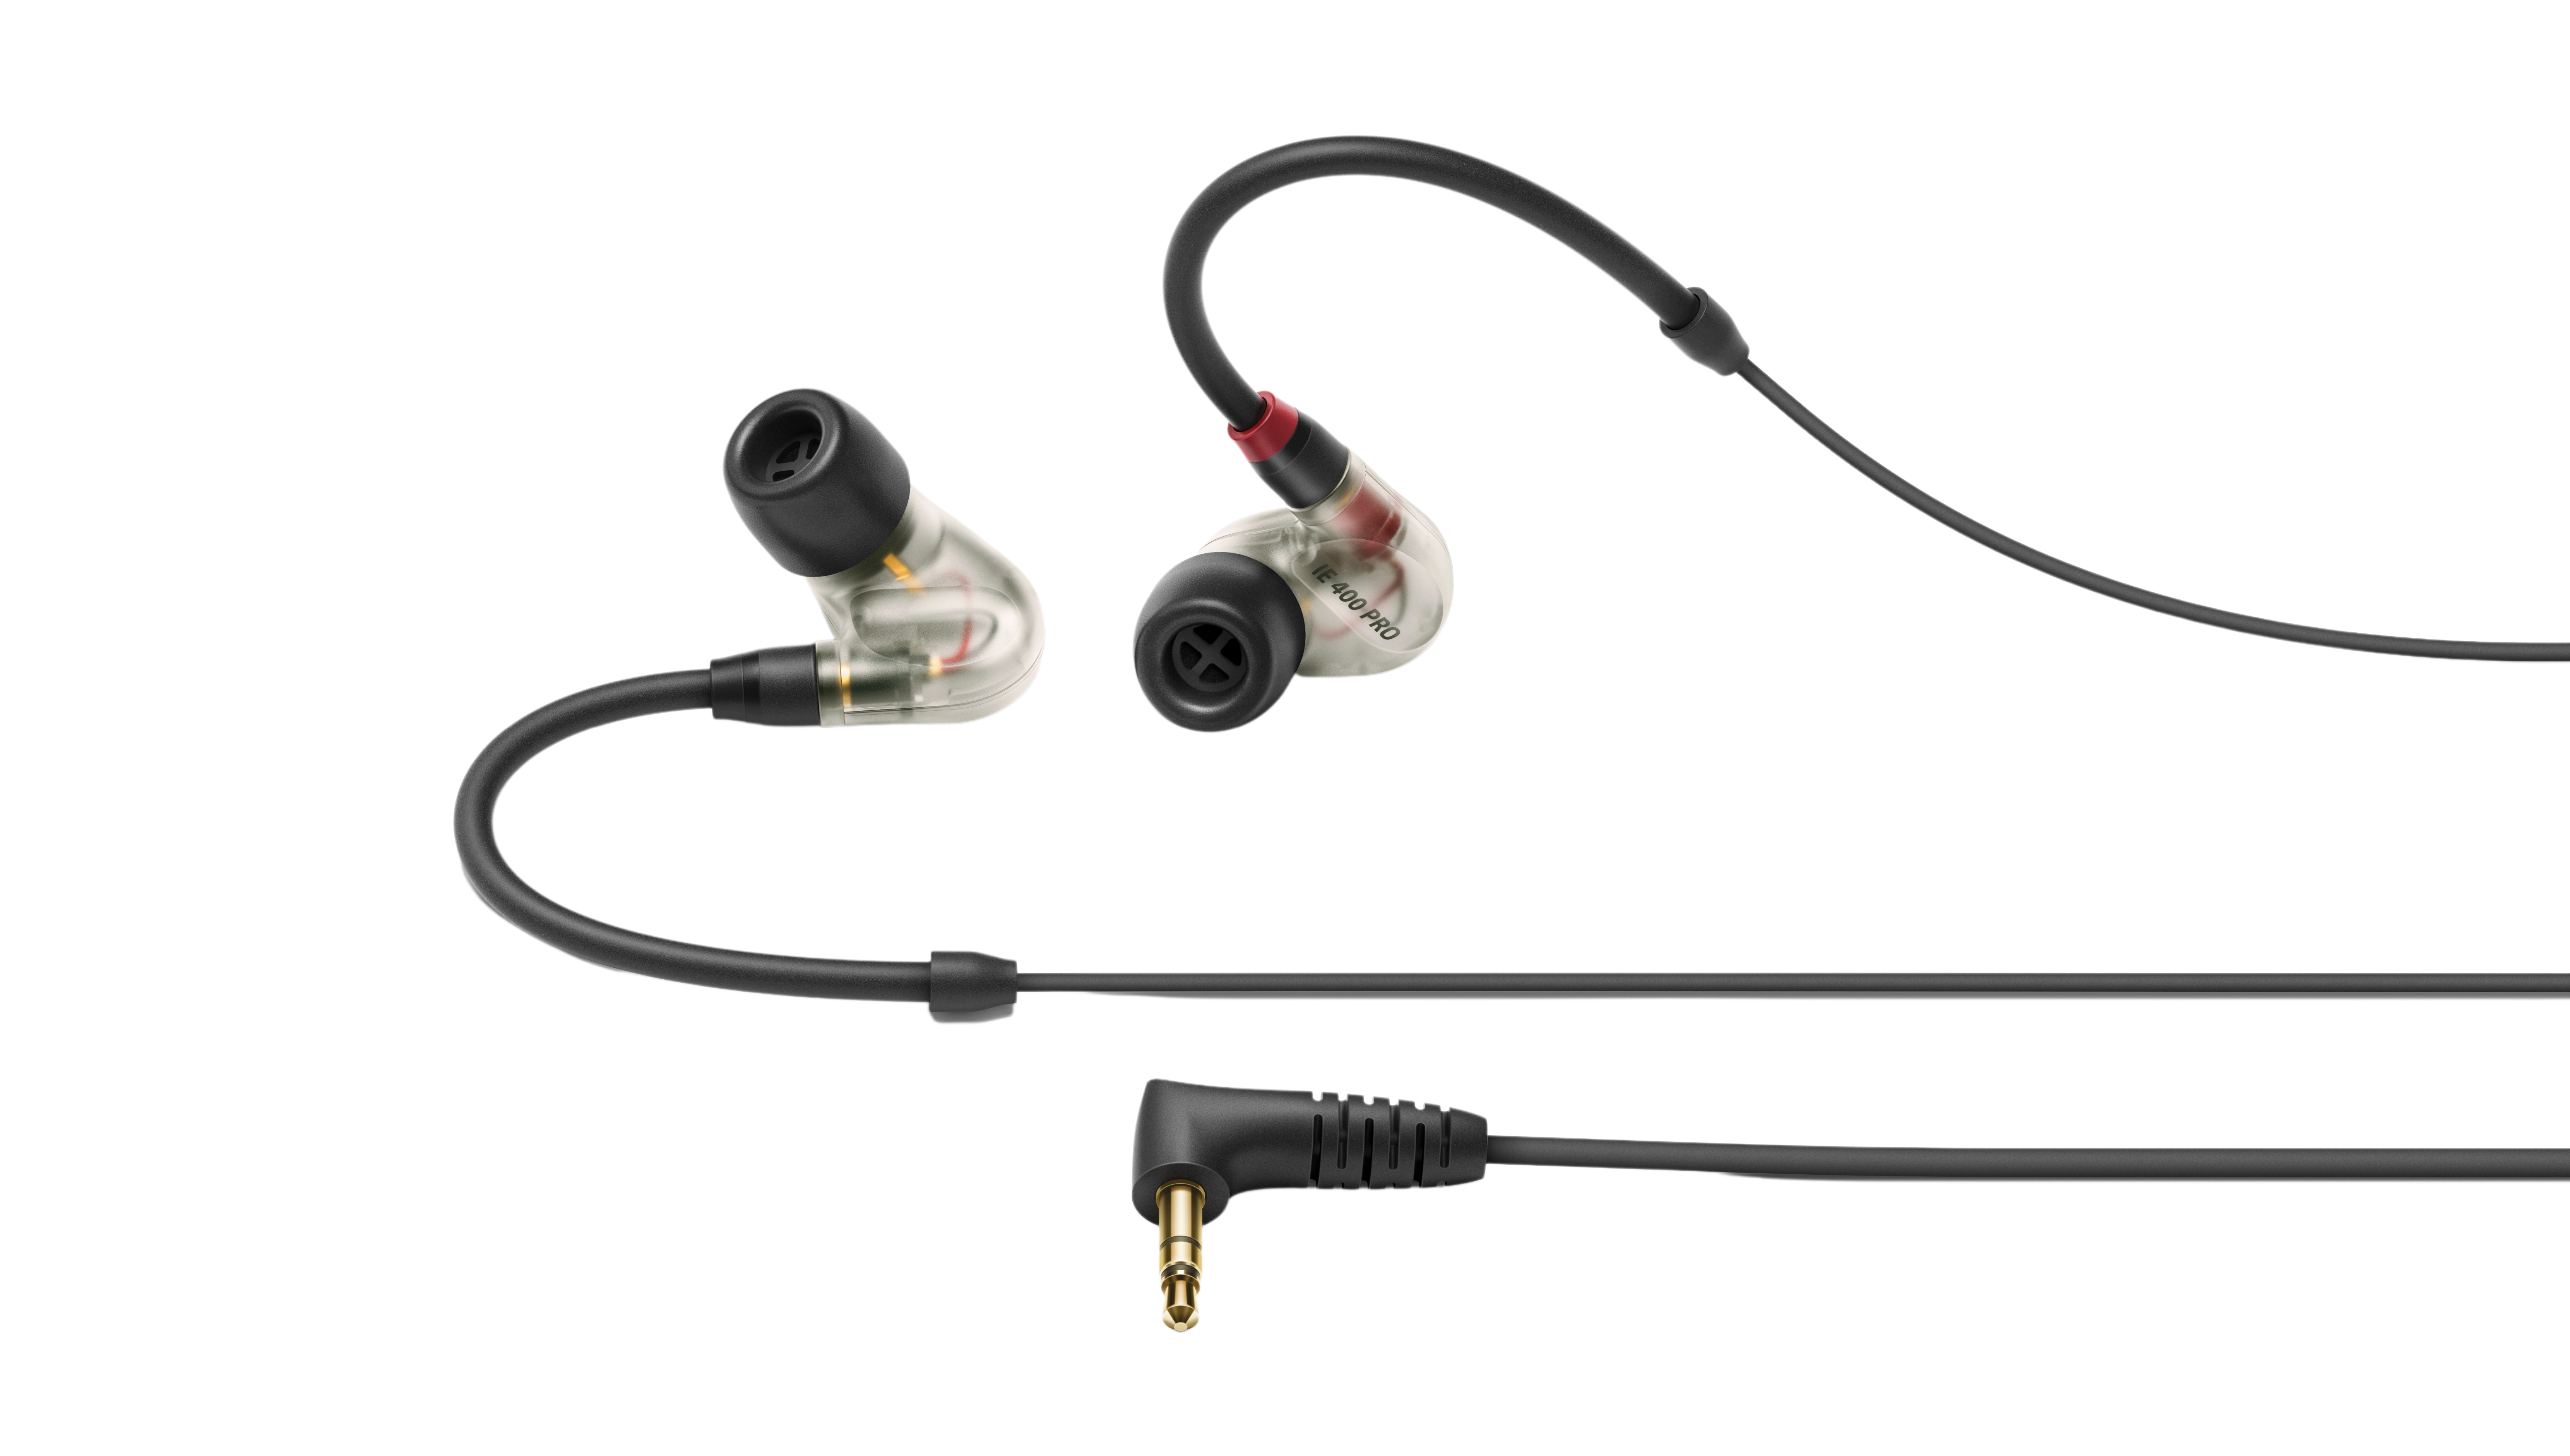 In-ear monitoring IE 400 Pro | Sennheiser - Sennheiser